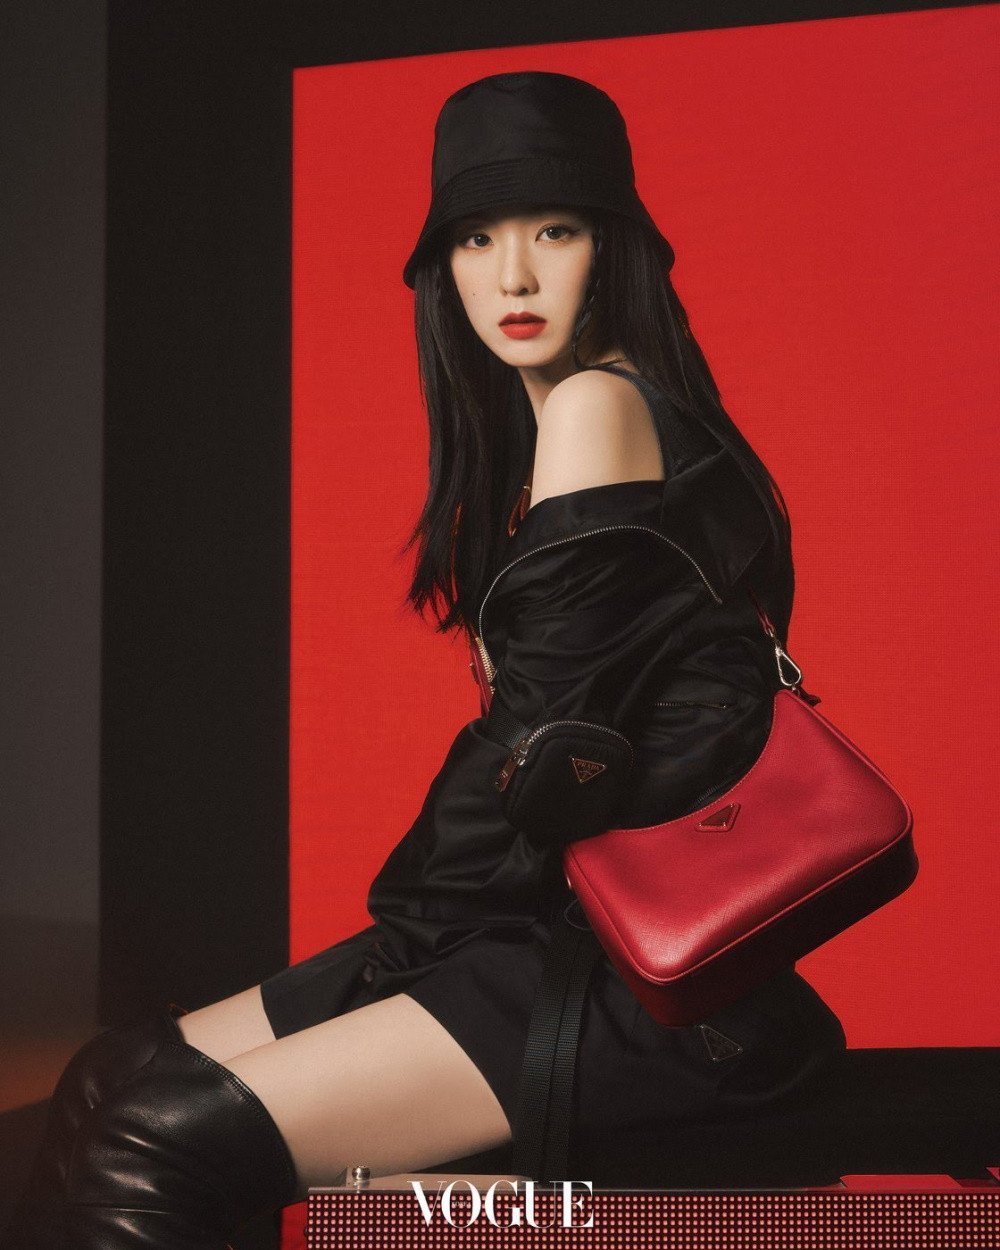 Irene chỉ vì dính 'phốt' thái độ đã gây nên làng sóng tẩy chay mạnh mẽ cho Prada ở Hàn Quốc.